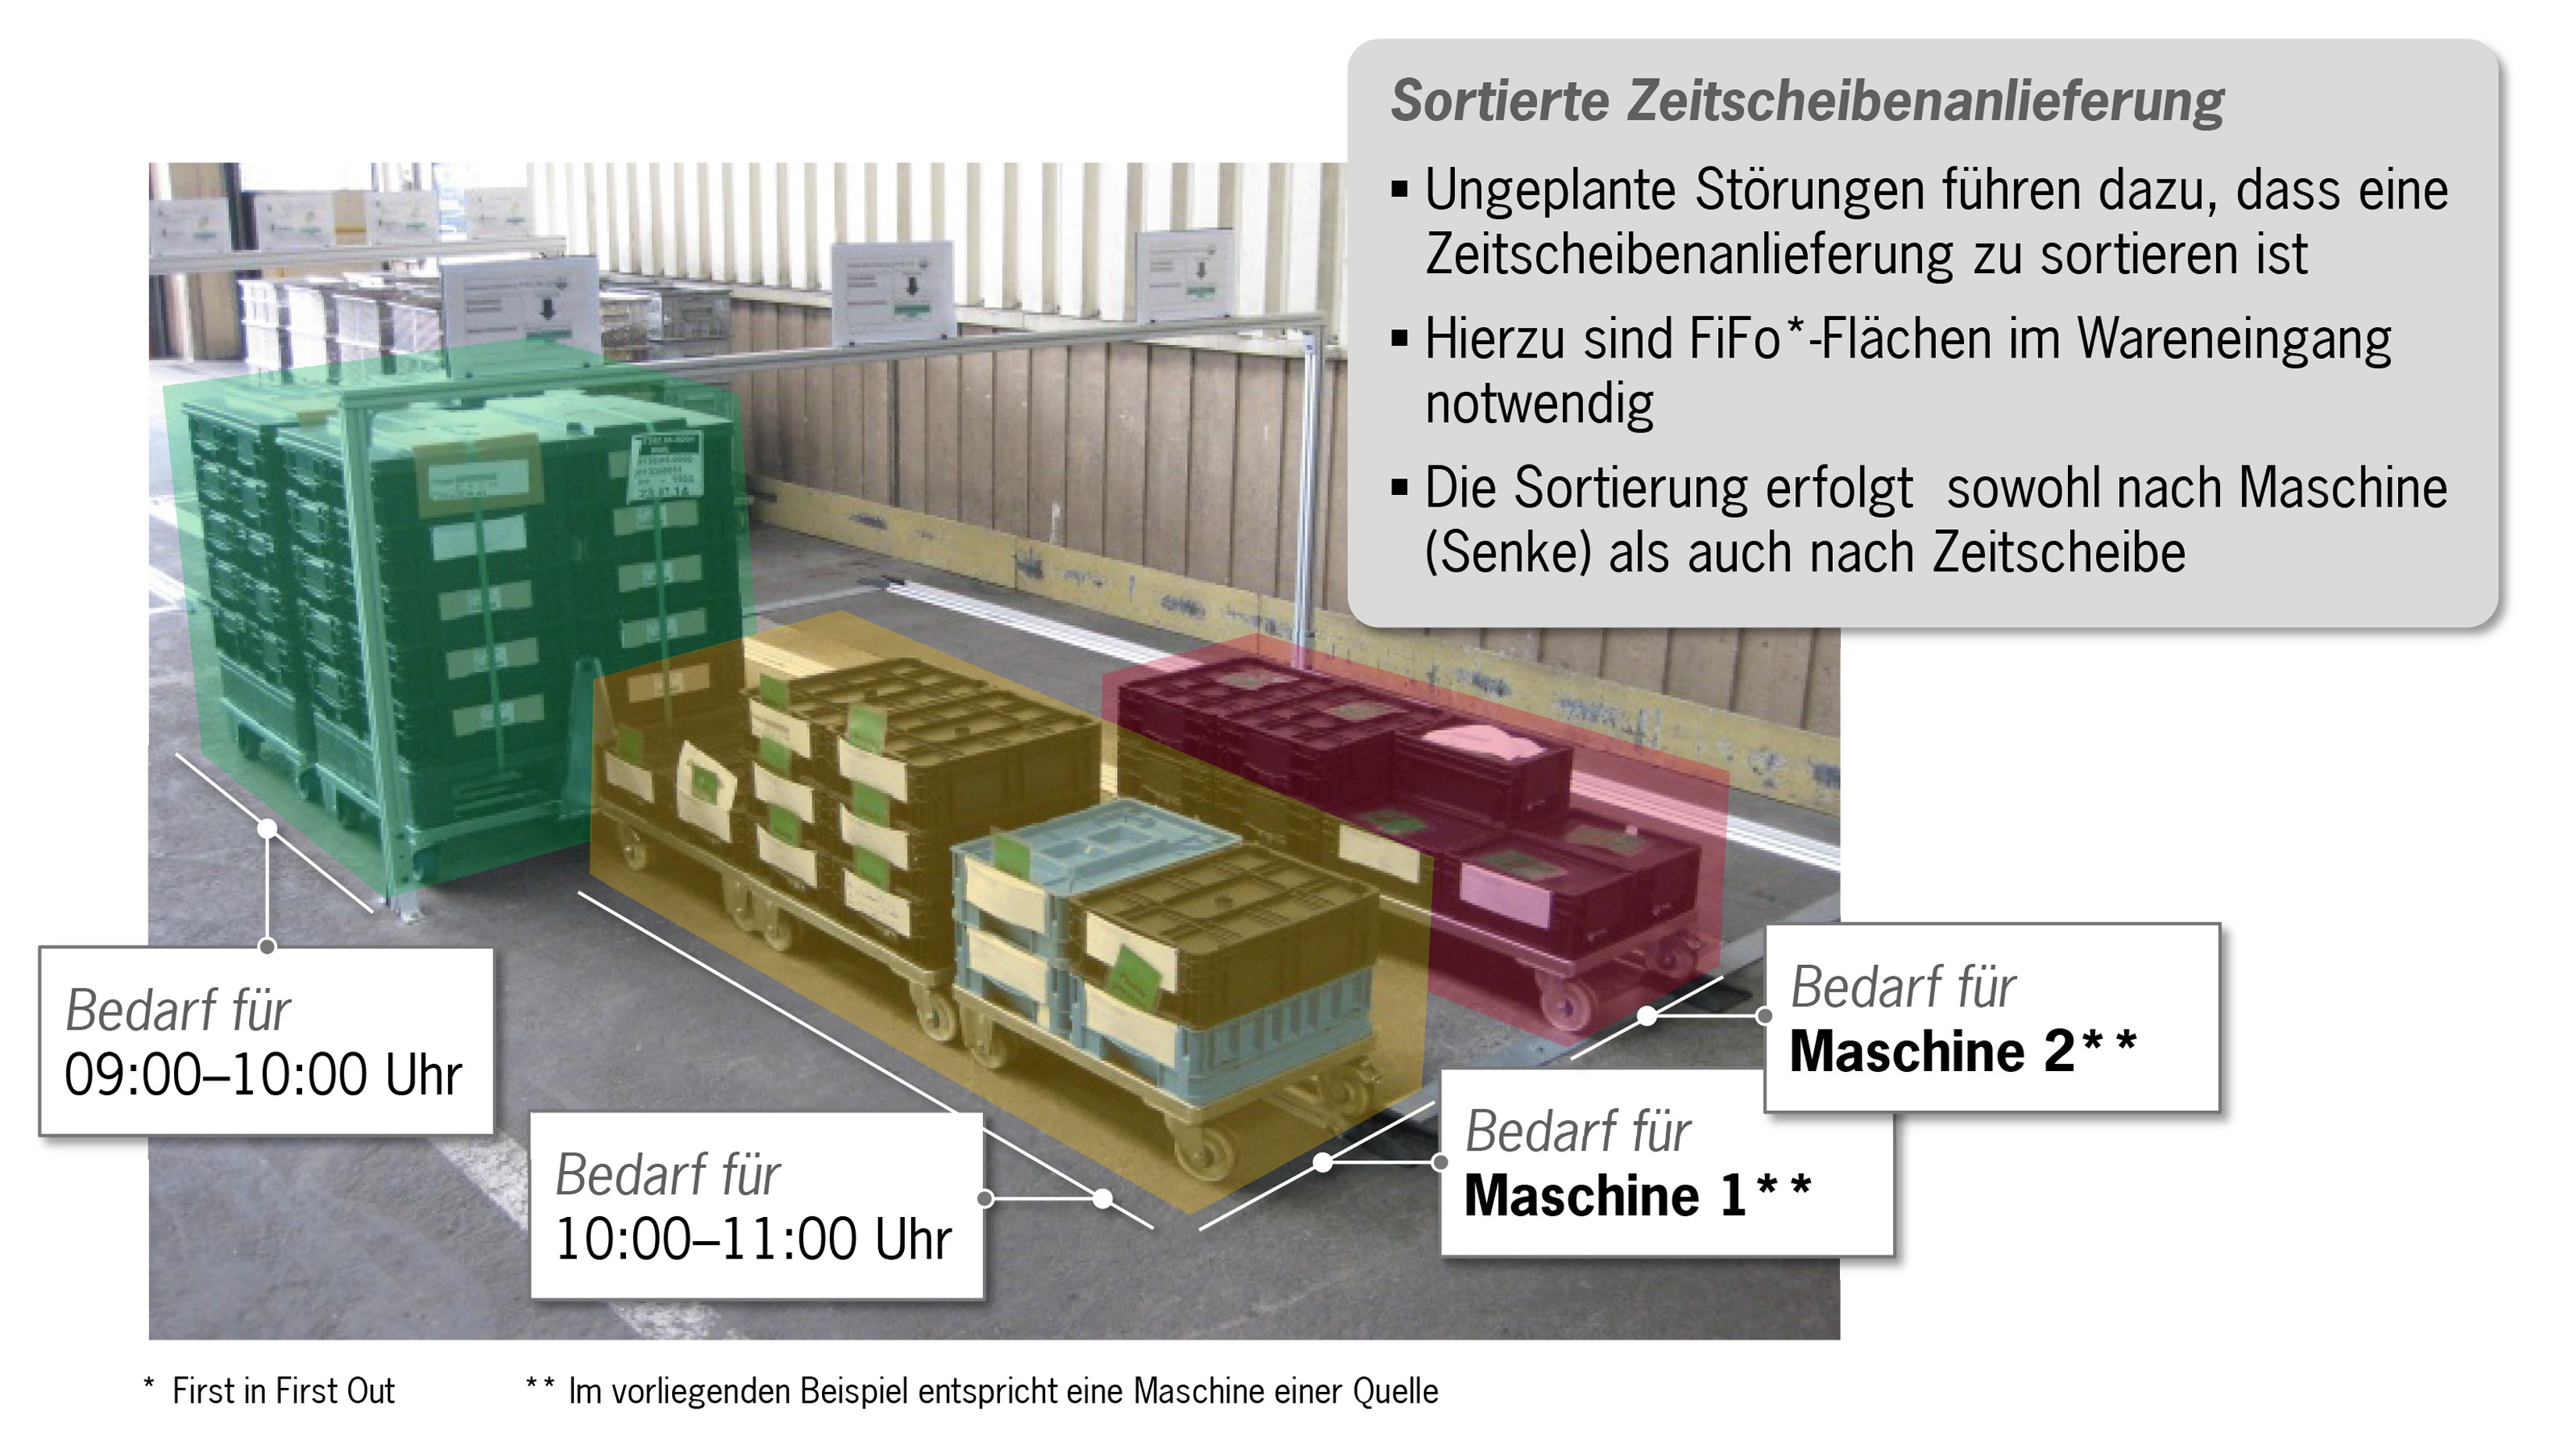 Zeitscheibenbelieferung in FiFo-Flächen, 2016, Porsche Consulting GmbH